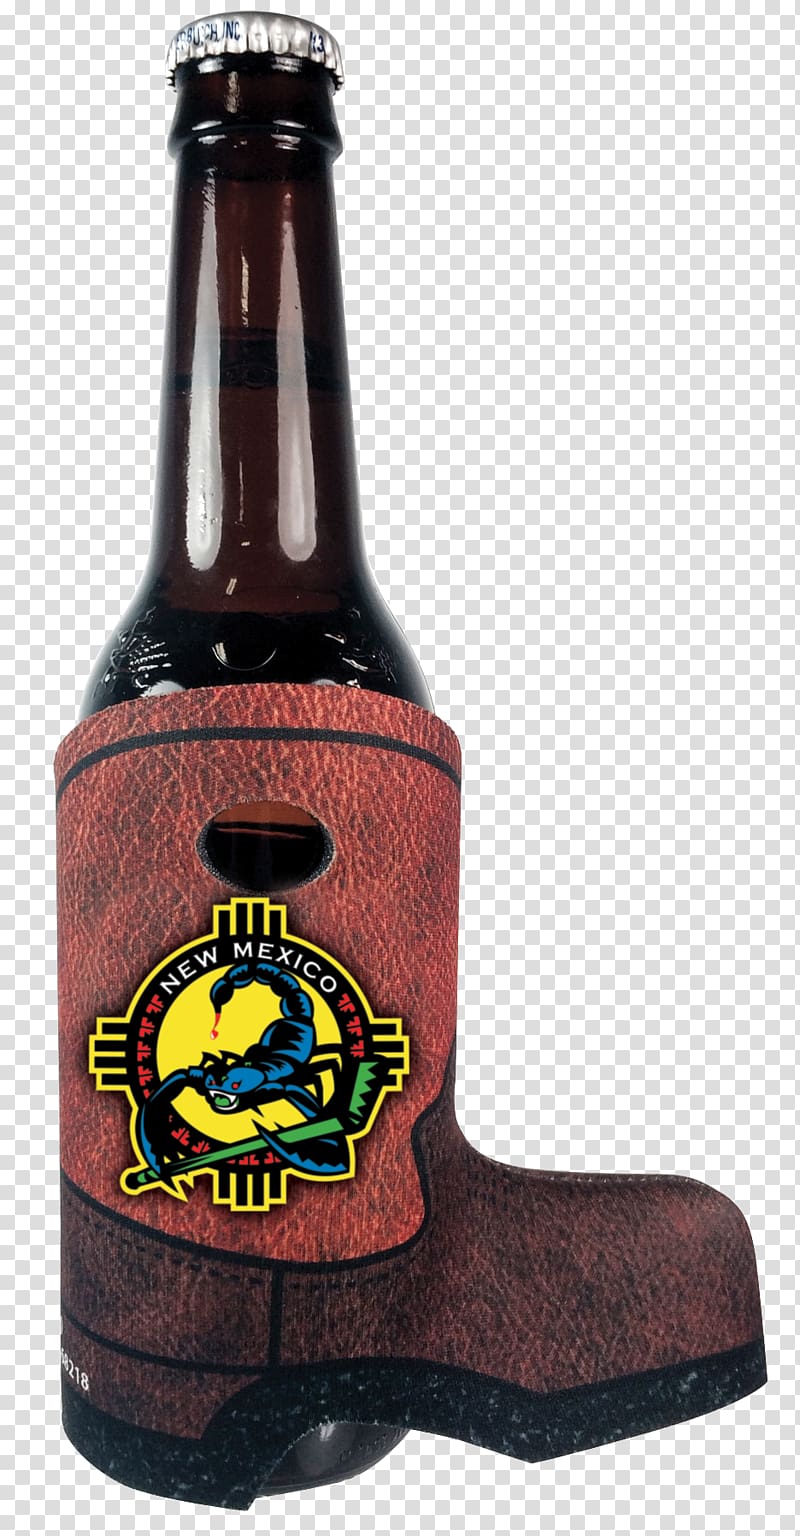 Beer bottle Koozie Glass, beer transparent background PNG clipart